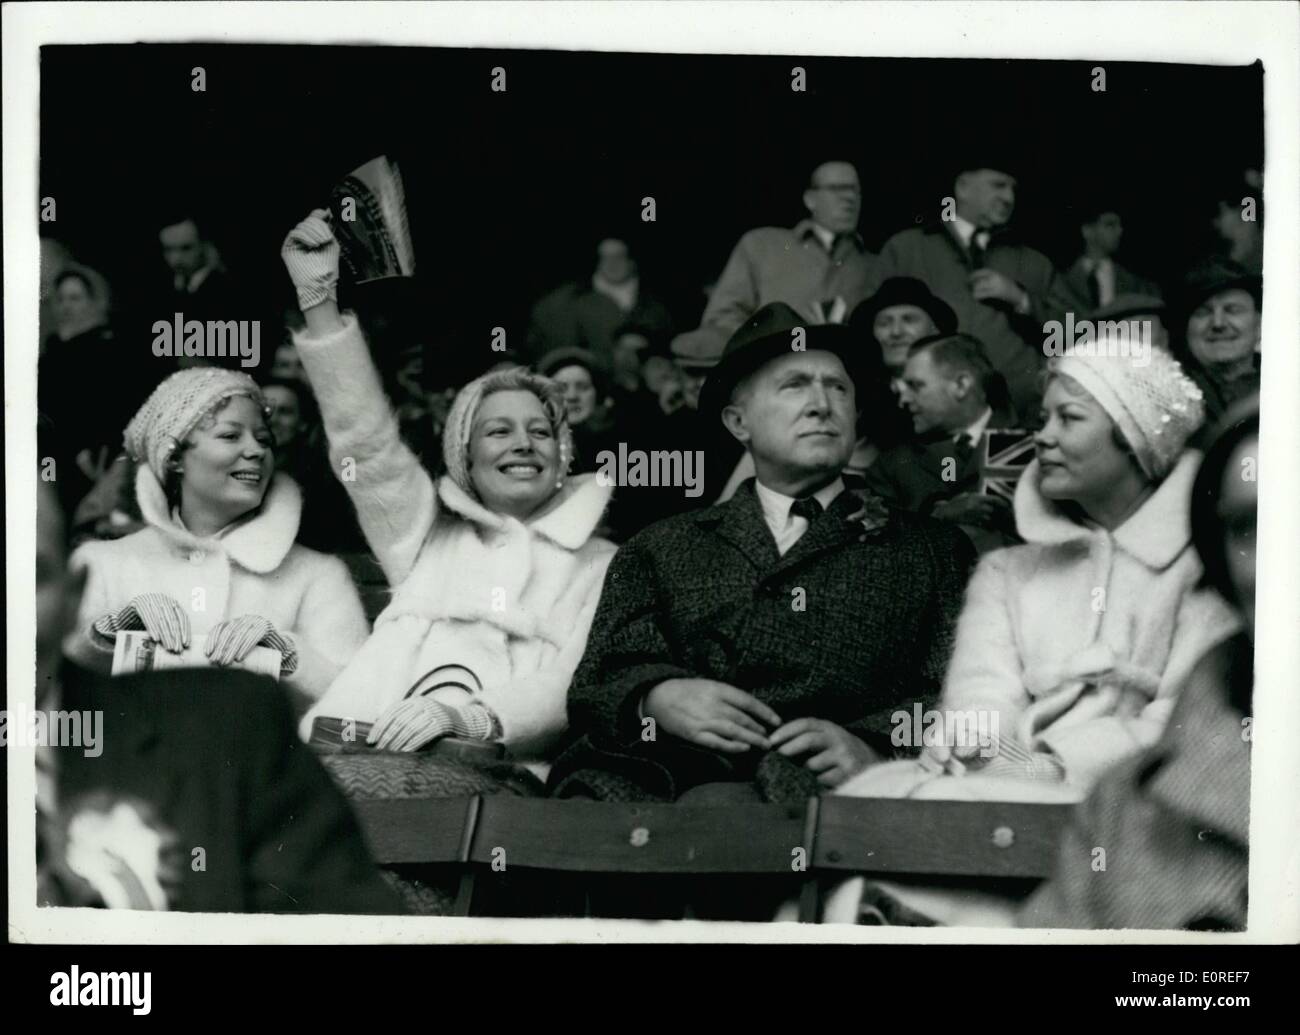 Avril 04, 1959 - Angleterre C. L'Ecosse à Wembley Joy a une vague pour Billy........photo montre le Beverley Sisters assister au match cet après-midi ......Babs est à gauche -- avec joie (Mme. Billy Wright) agiter le drapeau -- et à droite est Teddy...l'homme entre eux est un M. Sanders. Banque D'Images